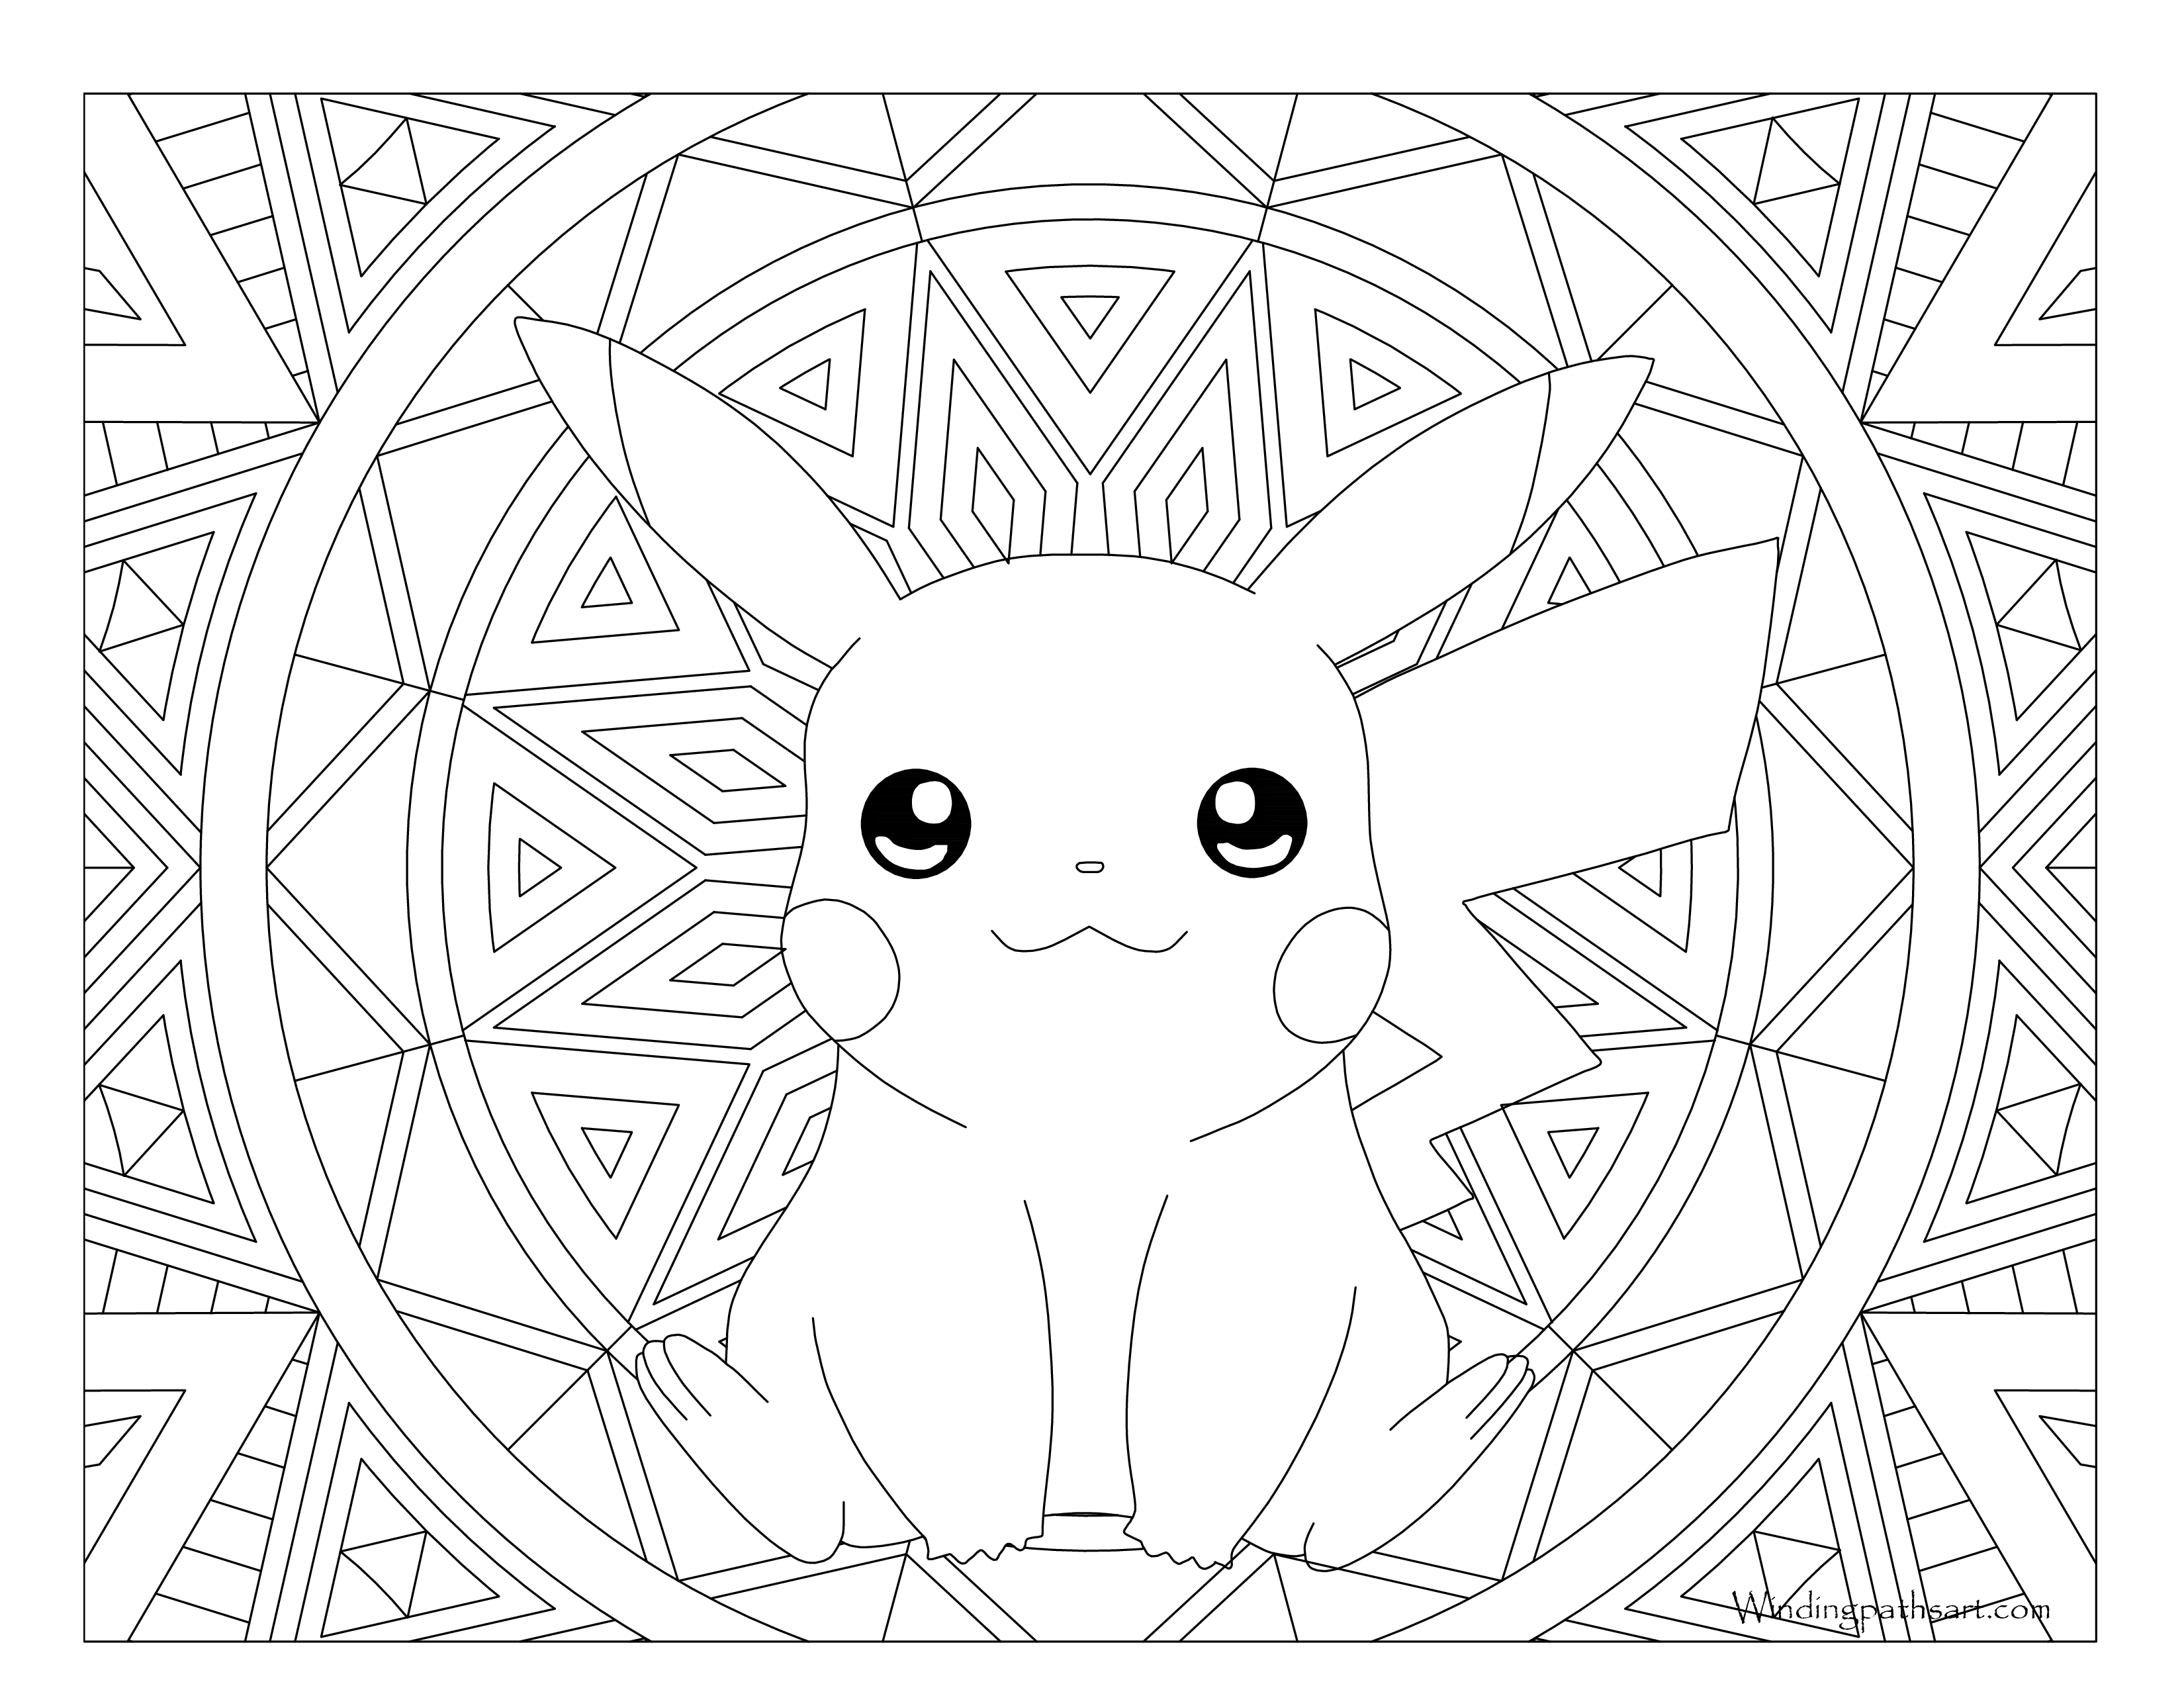 Pikachu pokemon coloring page